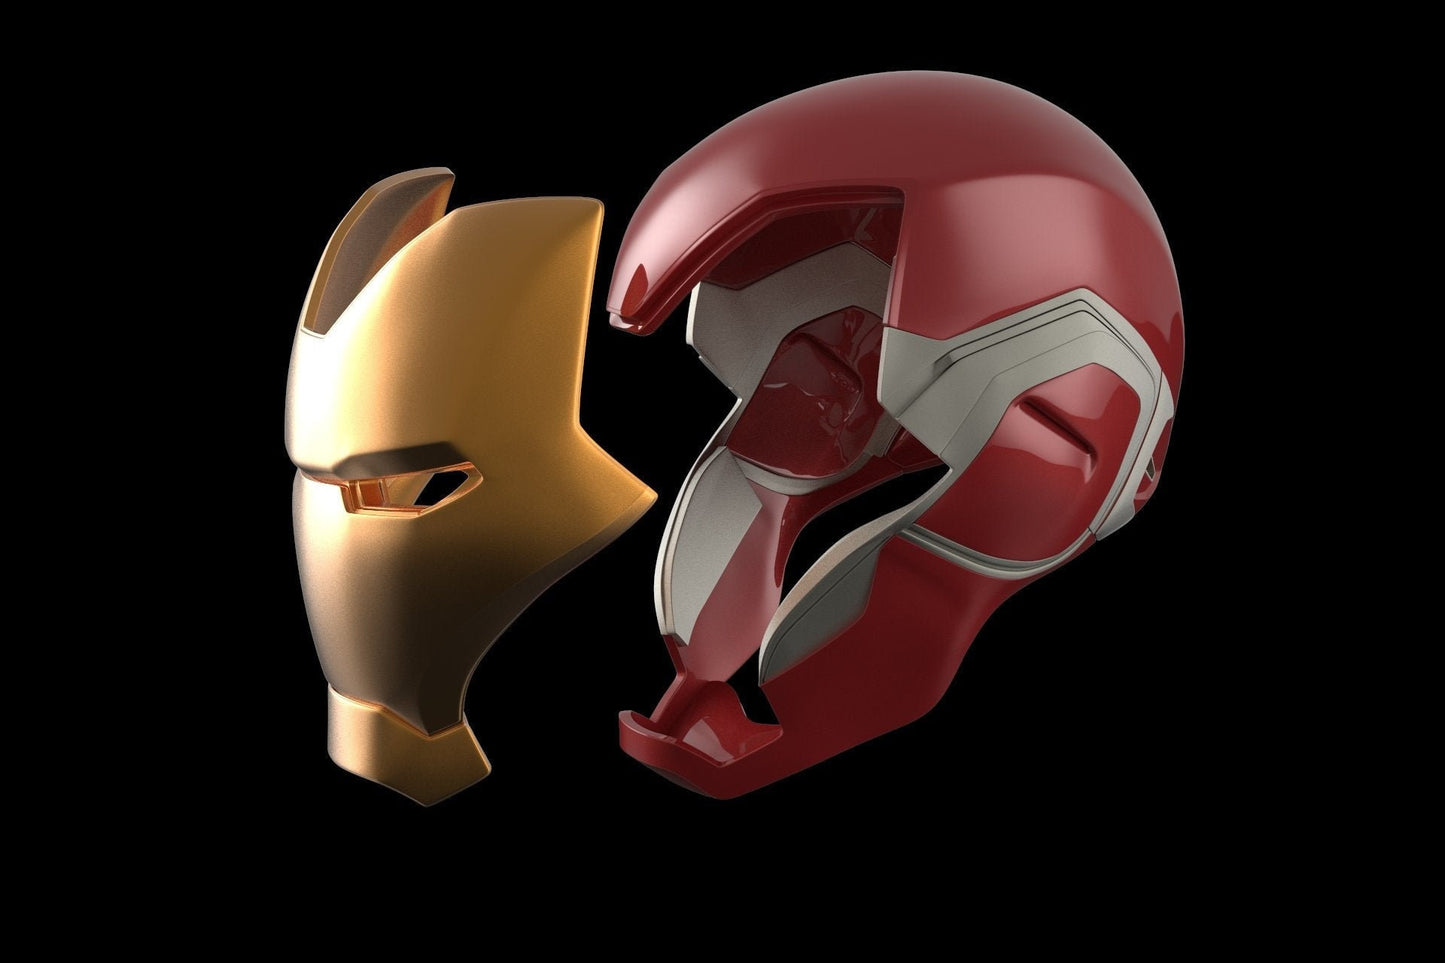 Iron man MK85 helmet (with interior detail!!)